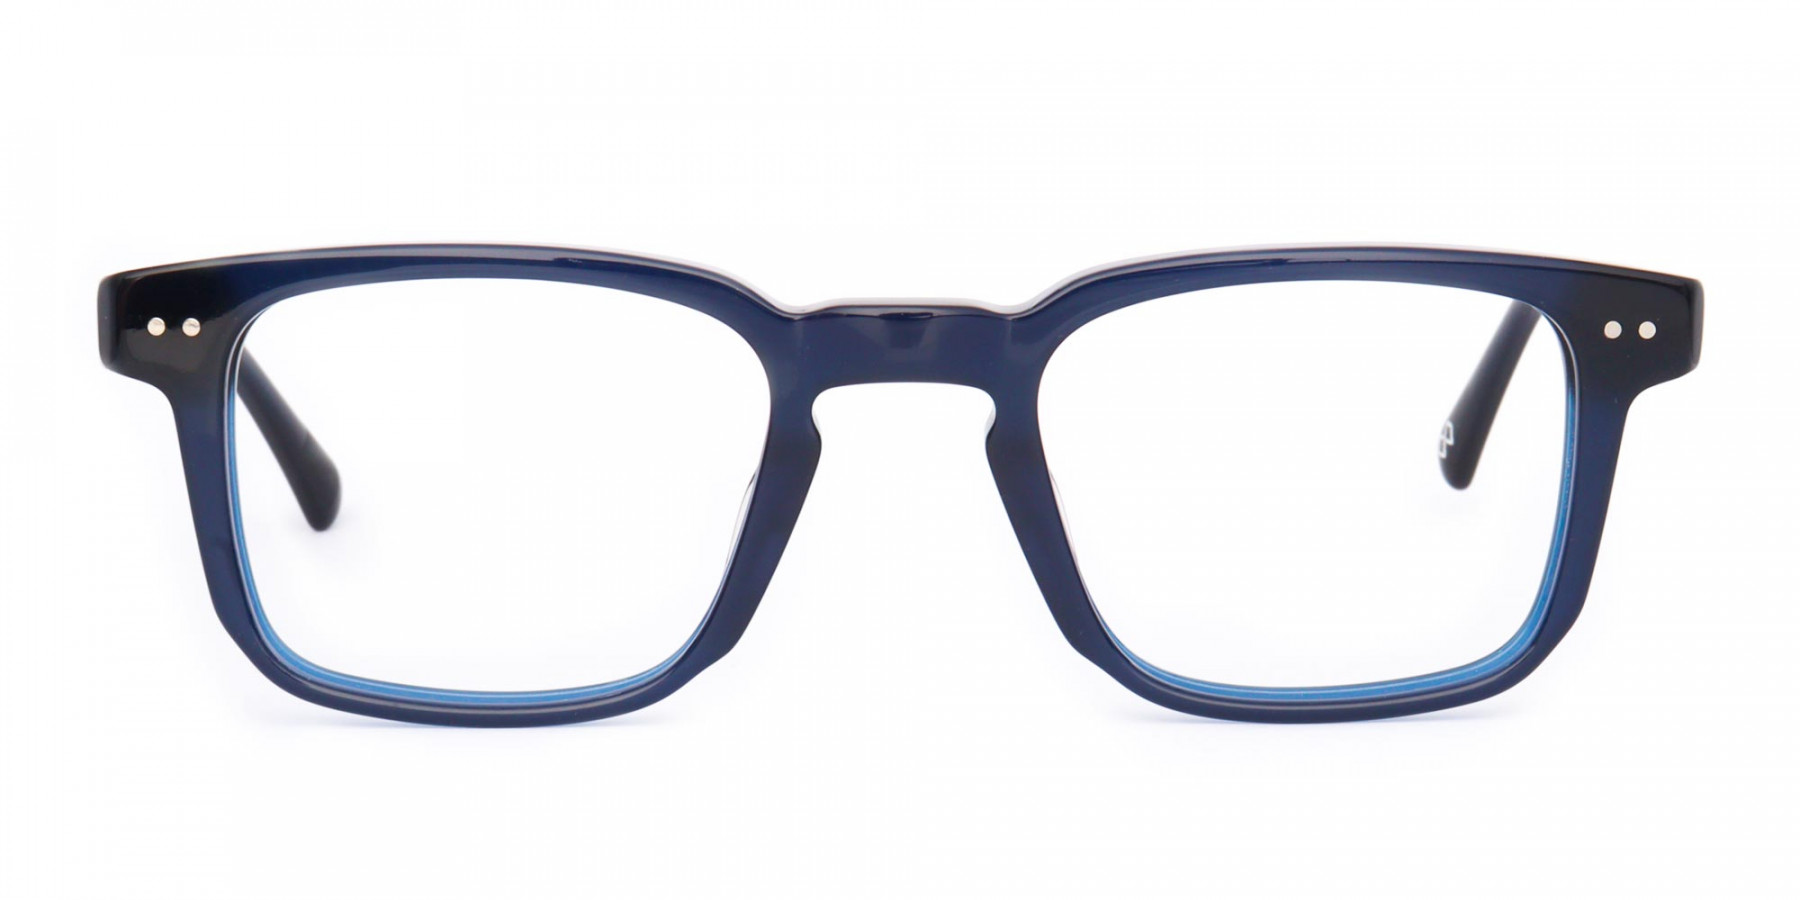 DORSET 4 - Buy Square Frame Blue Light Glasses | Specscart.®